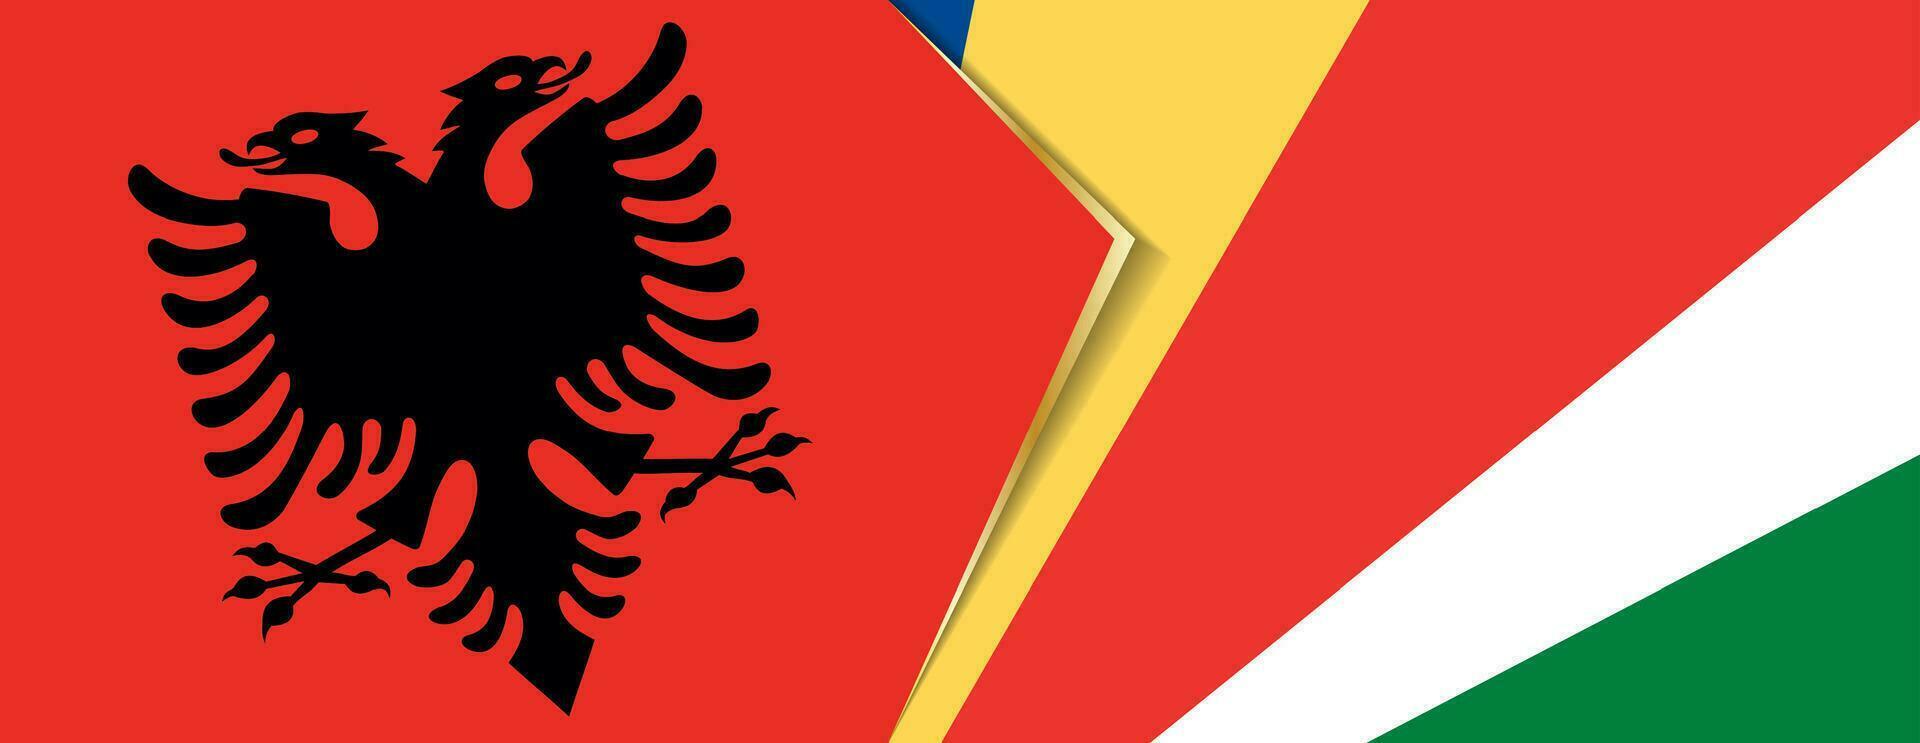 Albanie et les Seychelles drapeaux, deux vecteur drapeaux.